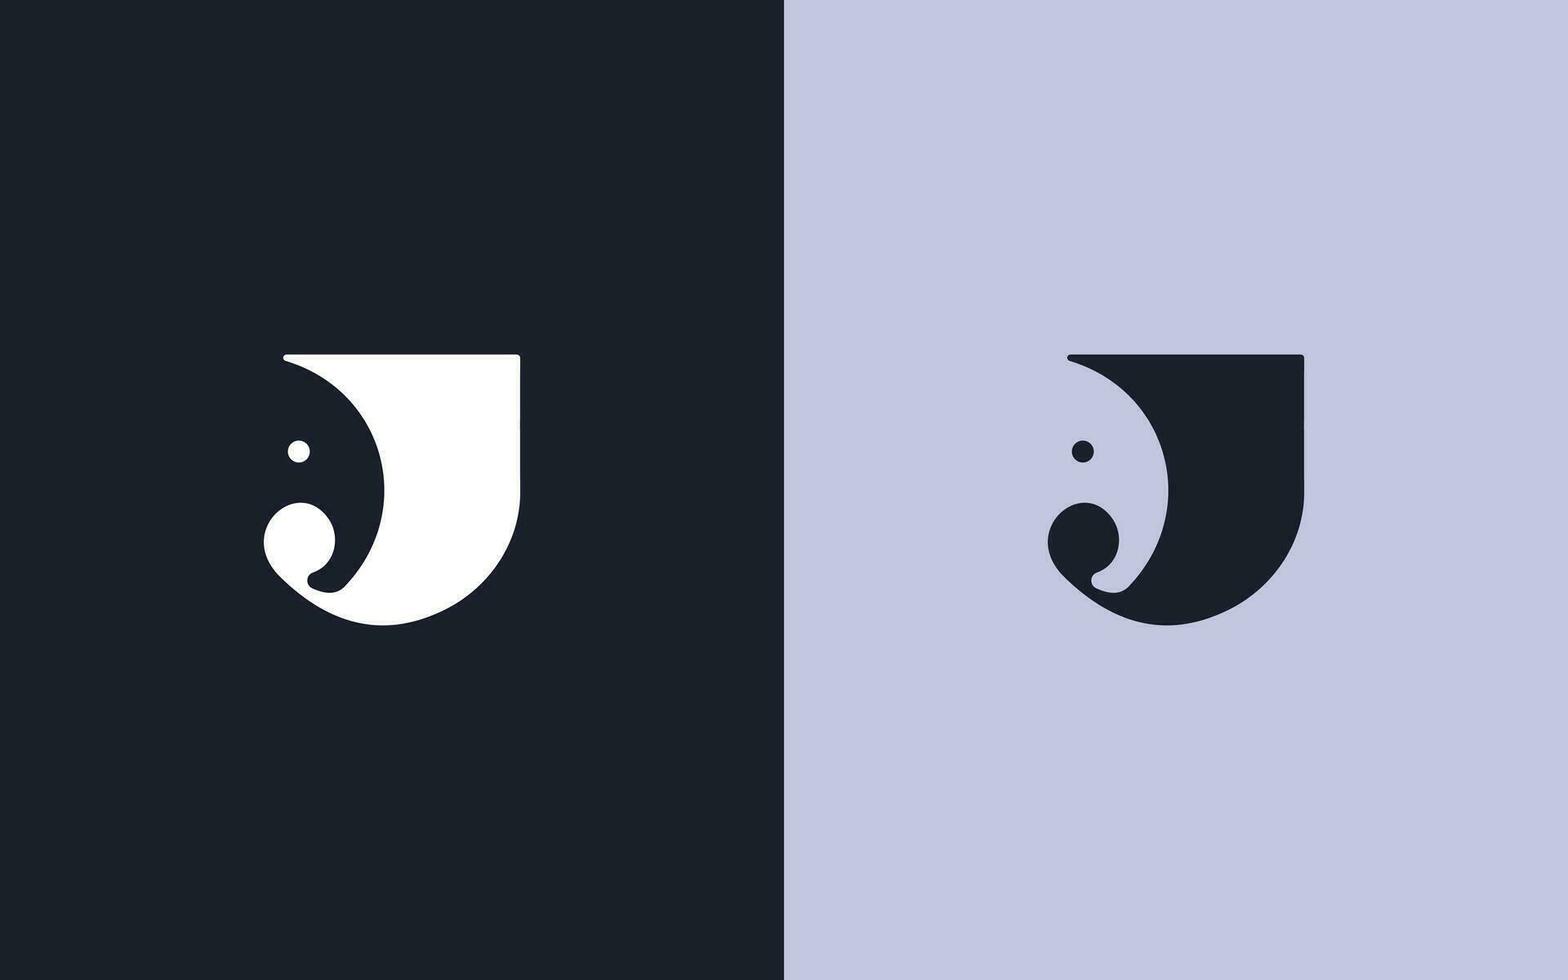 J letter elephant face shape logo design vector